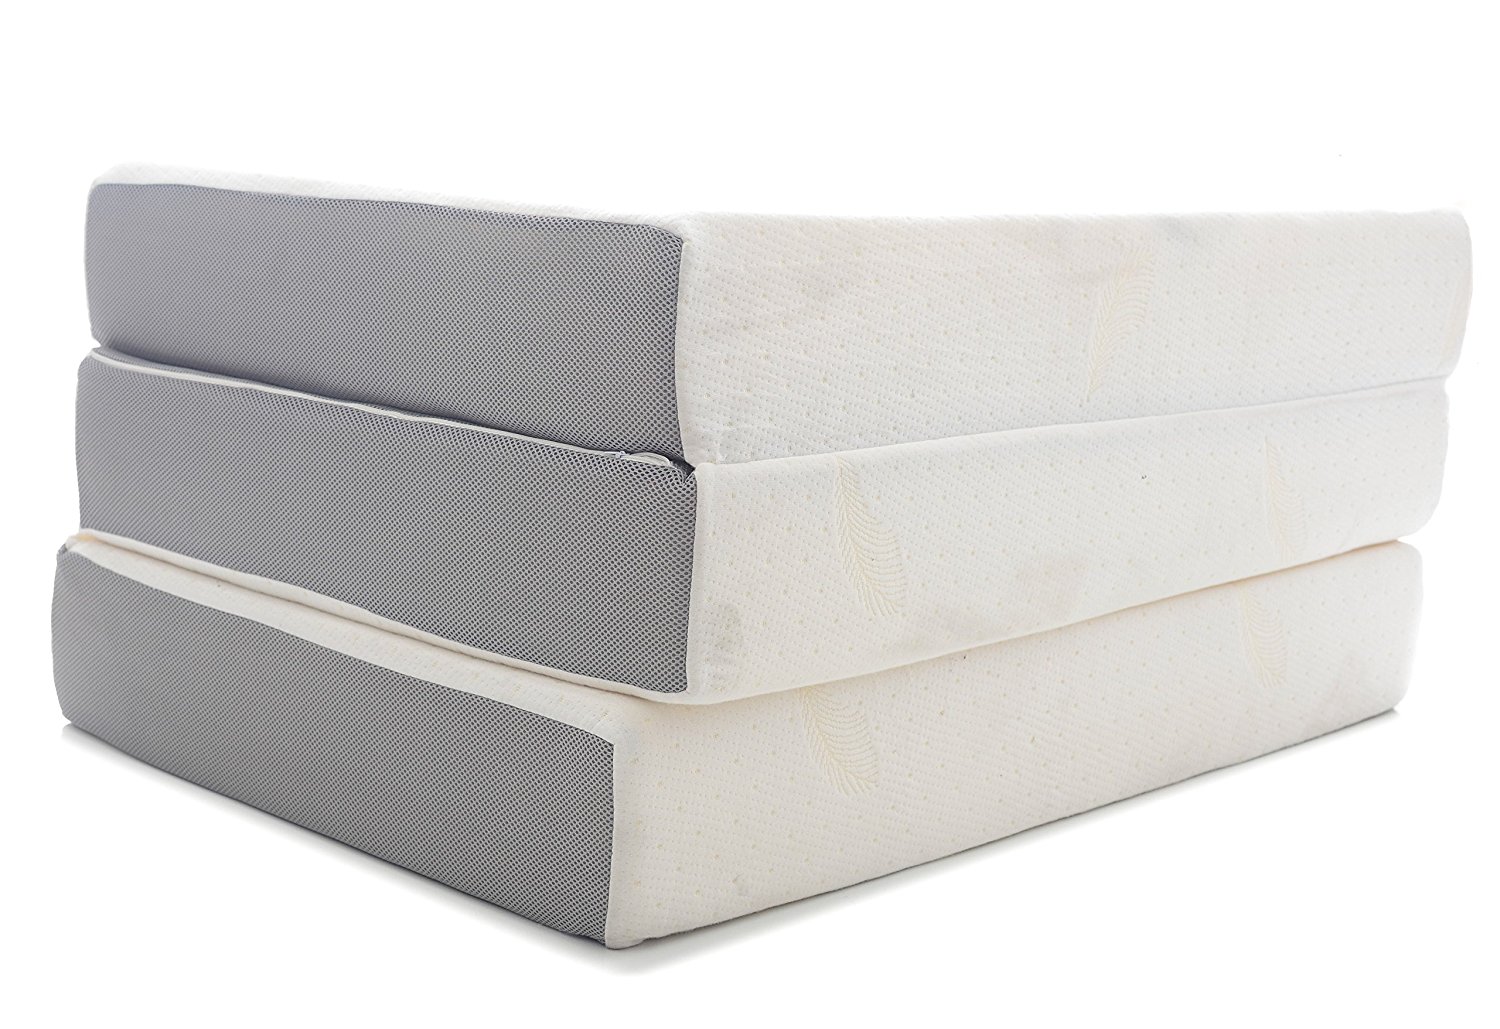 milliard 6-inch tri-fold mattress twin